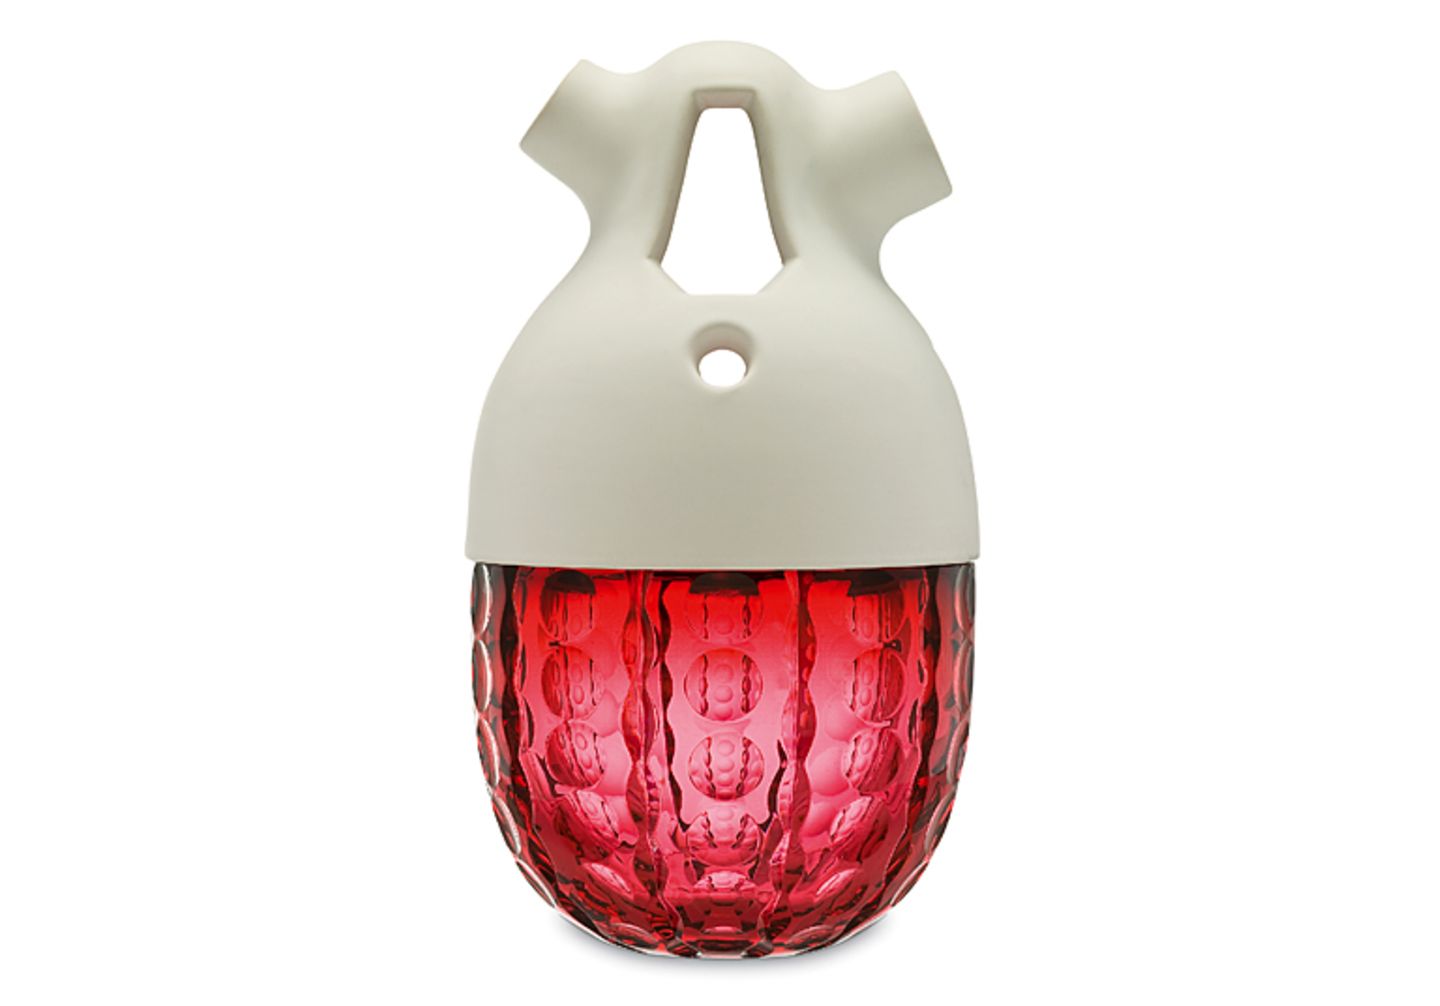 Designer-Vase nach Fruchtvorbild